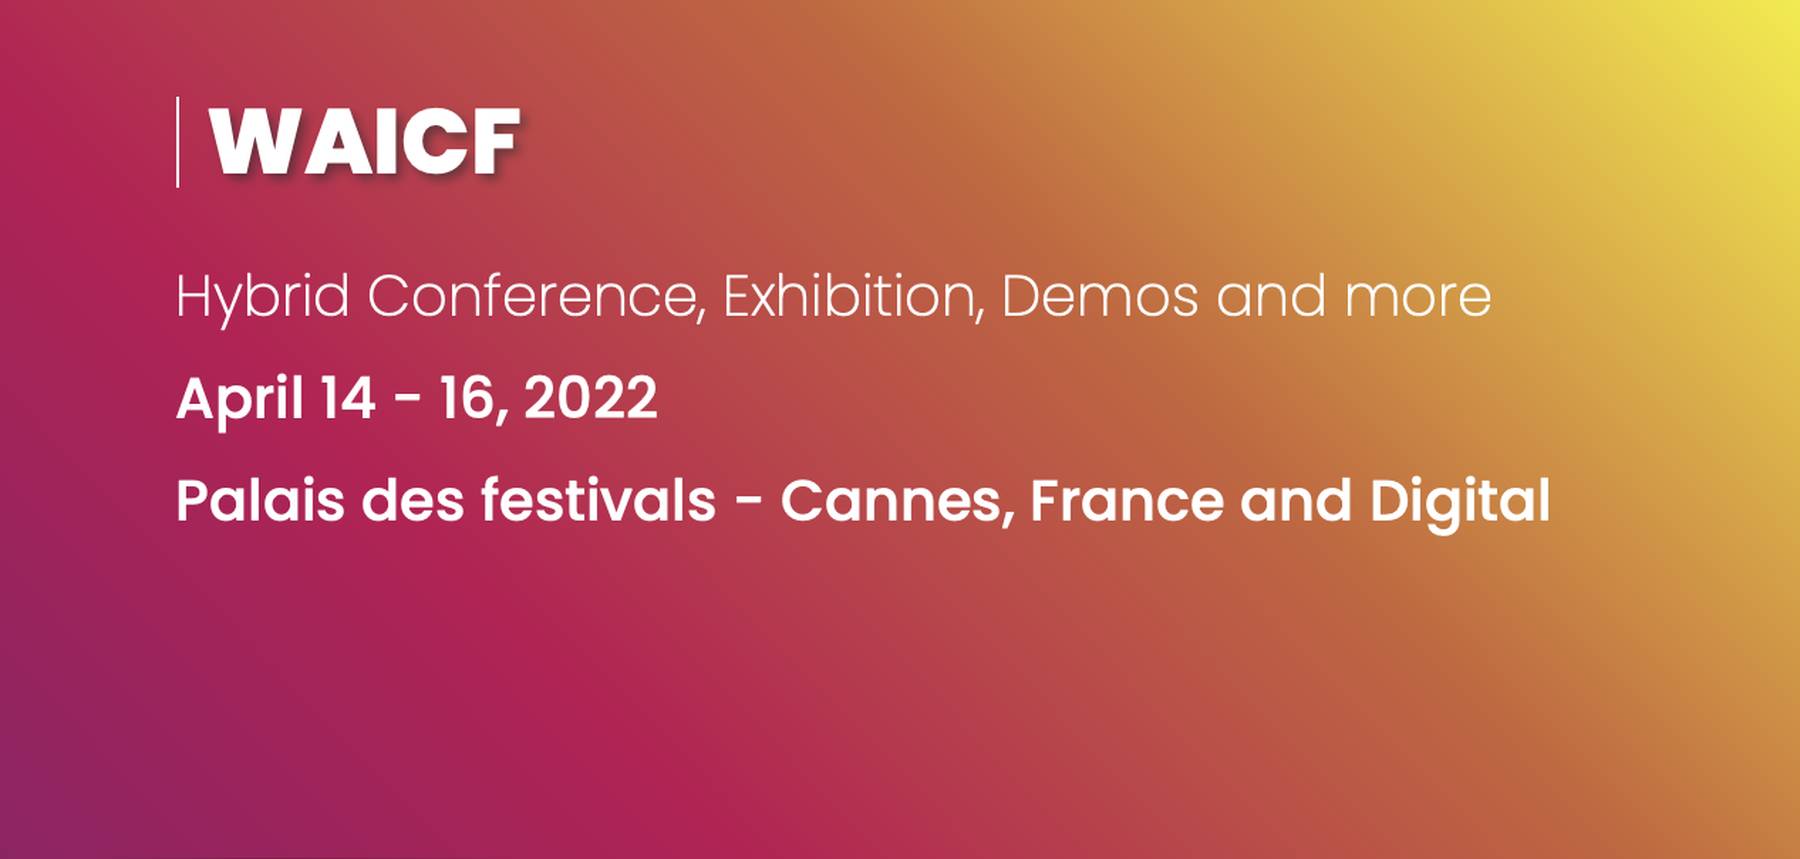 World AI Cannes Festival 2022